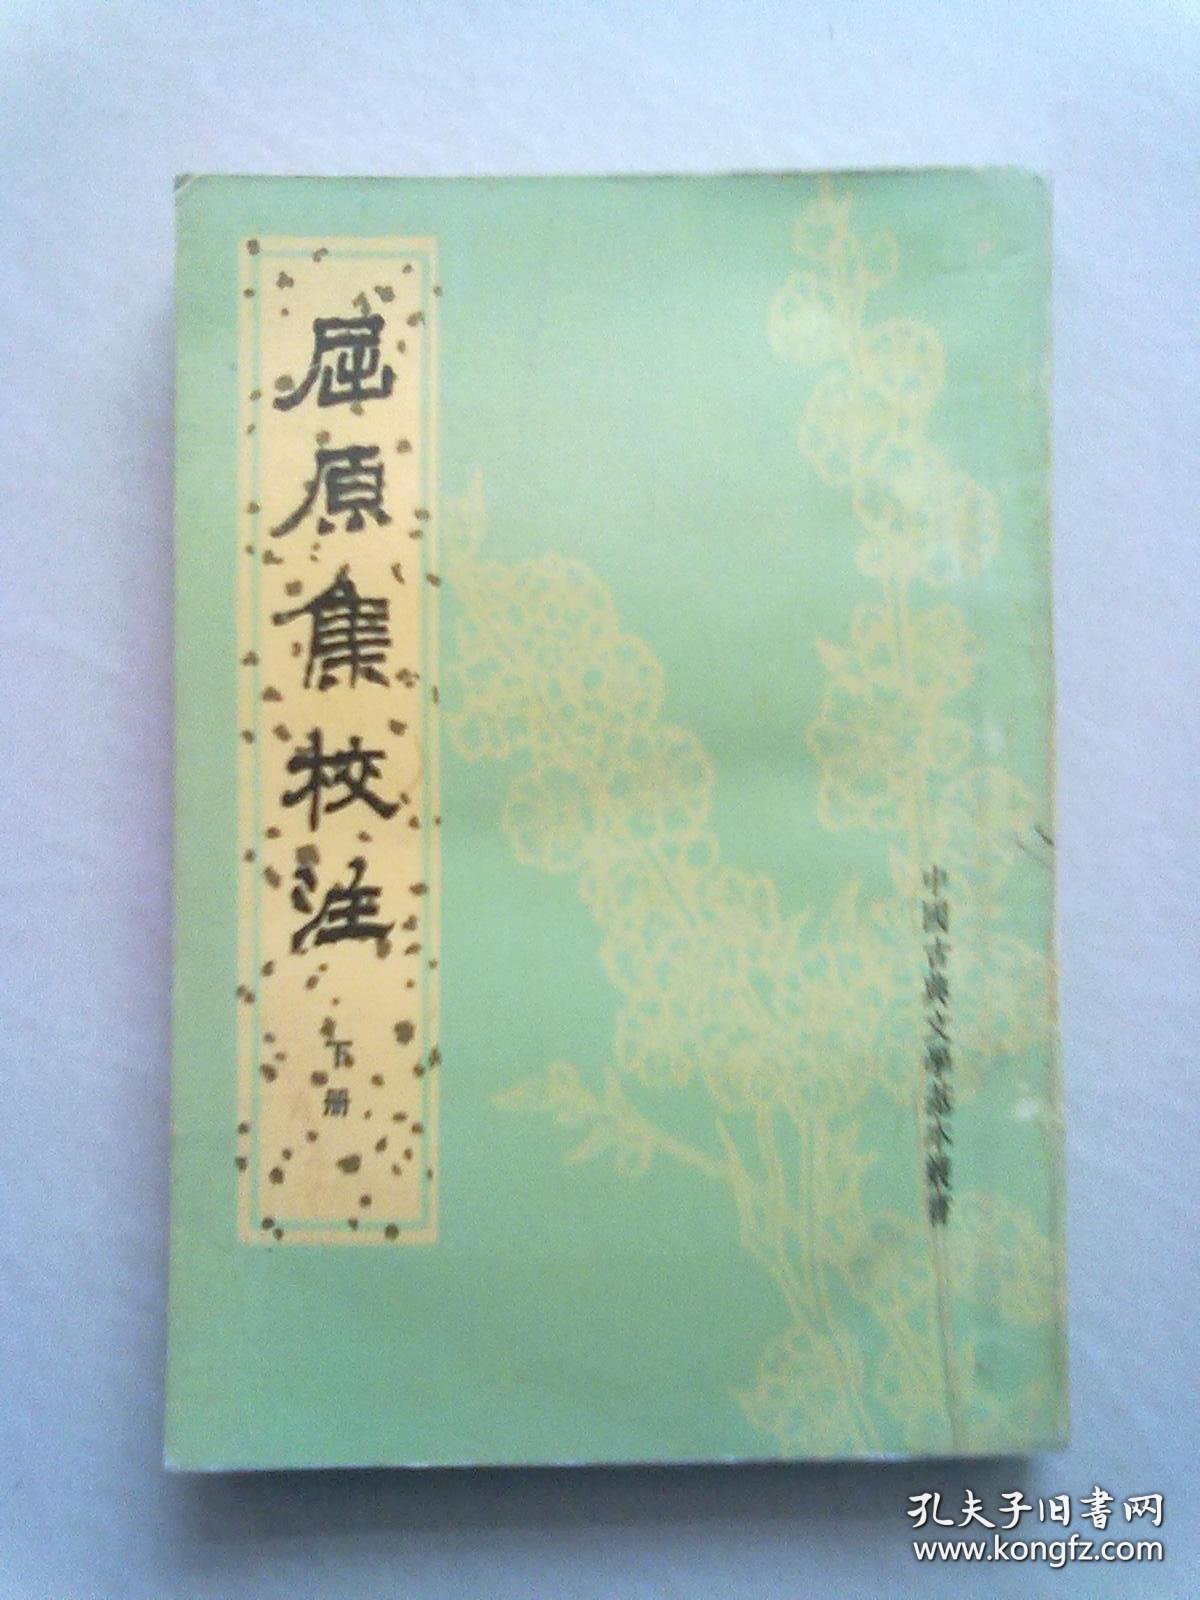 中国古典文学基本丛书《屈原集校注》【下册】